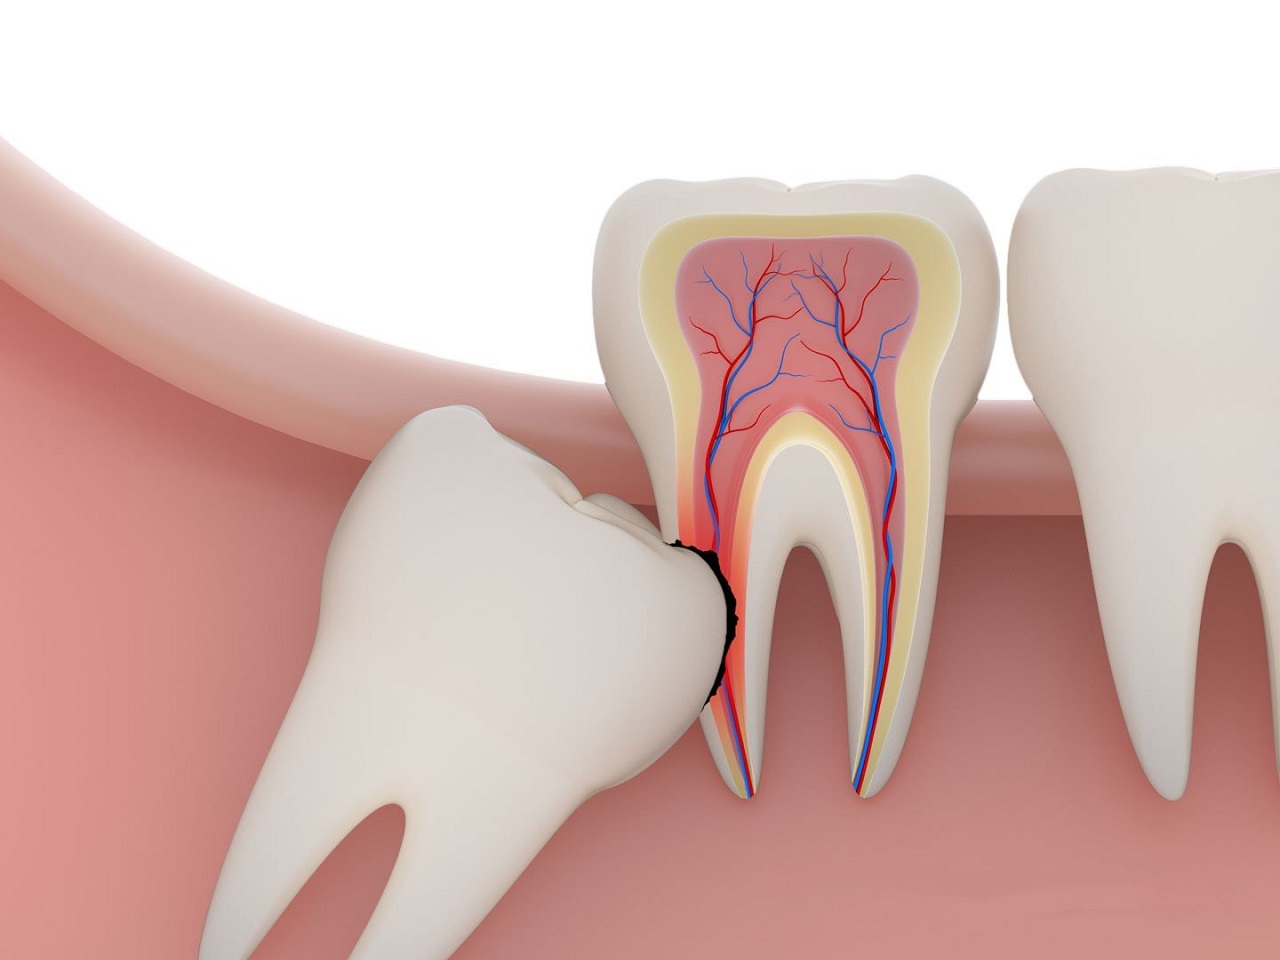  Lưu ý khi nhổ răng số 8 - Điều quan trọng mà bạn cần biết